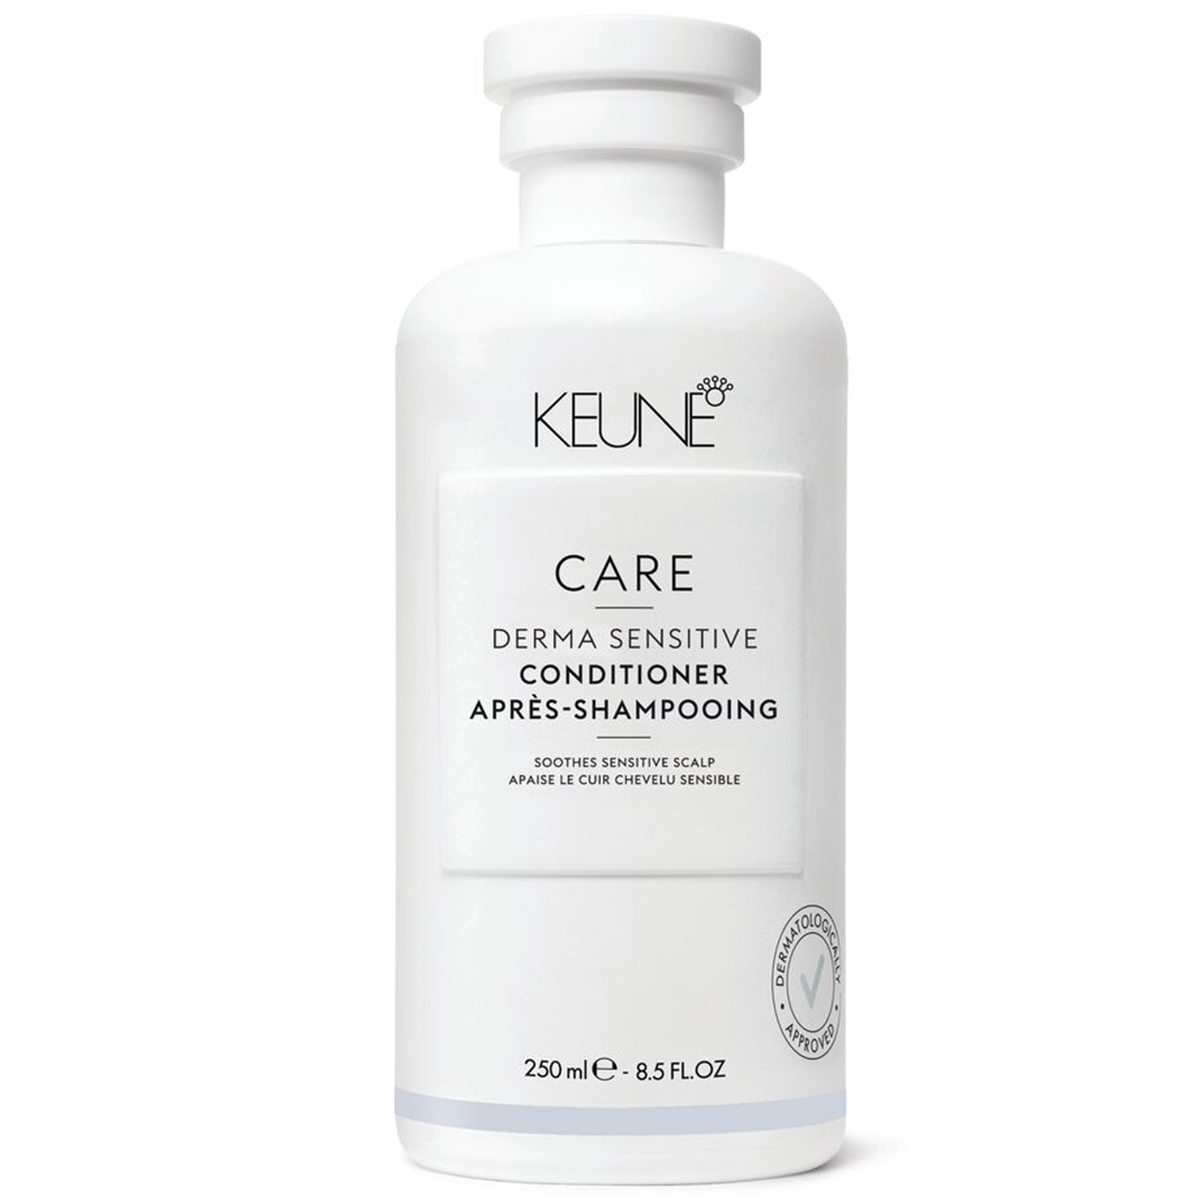 Keune Кондиционер для чувствительной кожи головы, 250 мл (Keune, Care) кондиционер для чувствительной кожи keune care derma sensetiv 250 мл